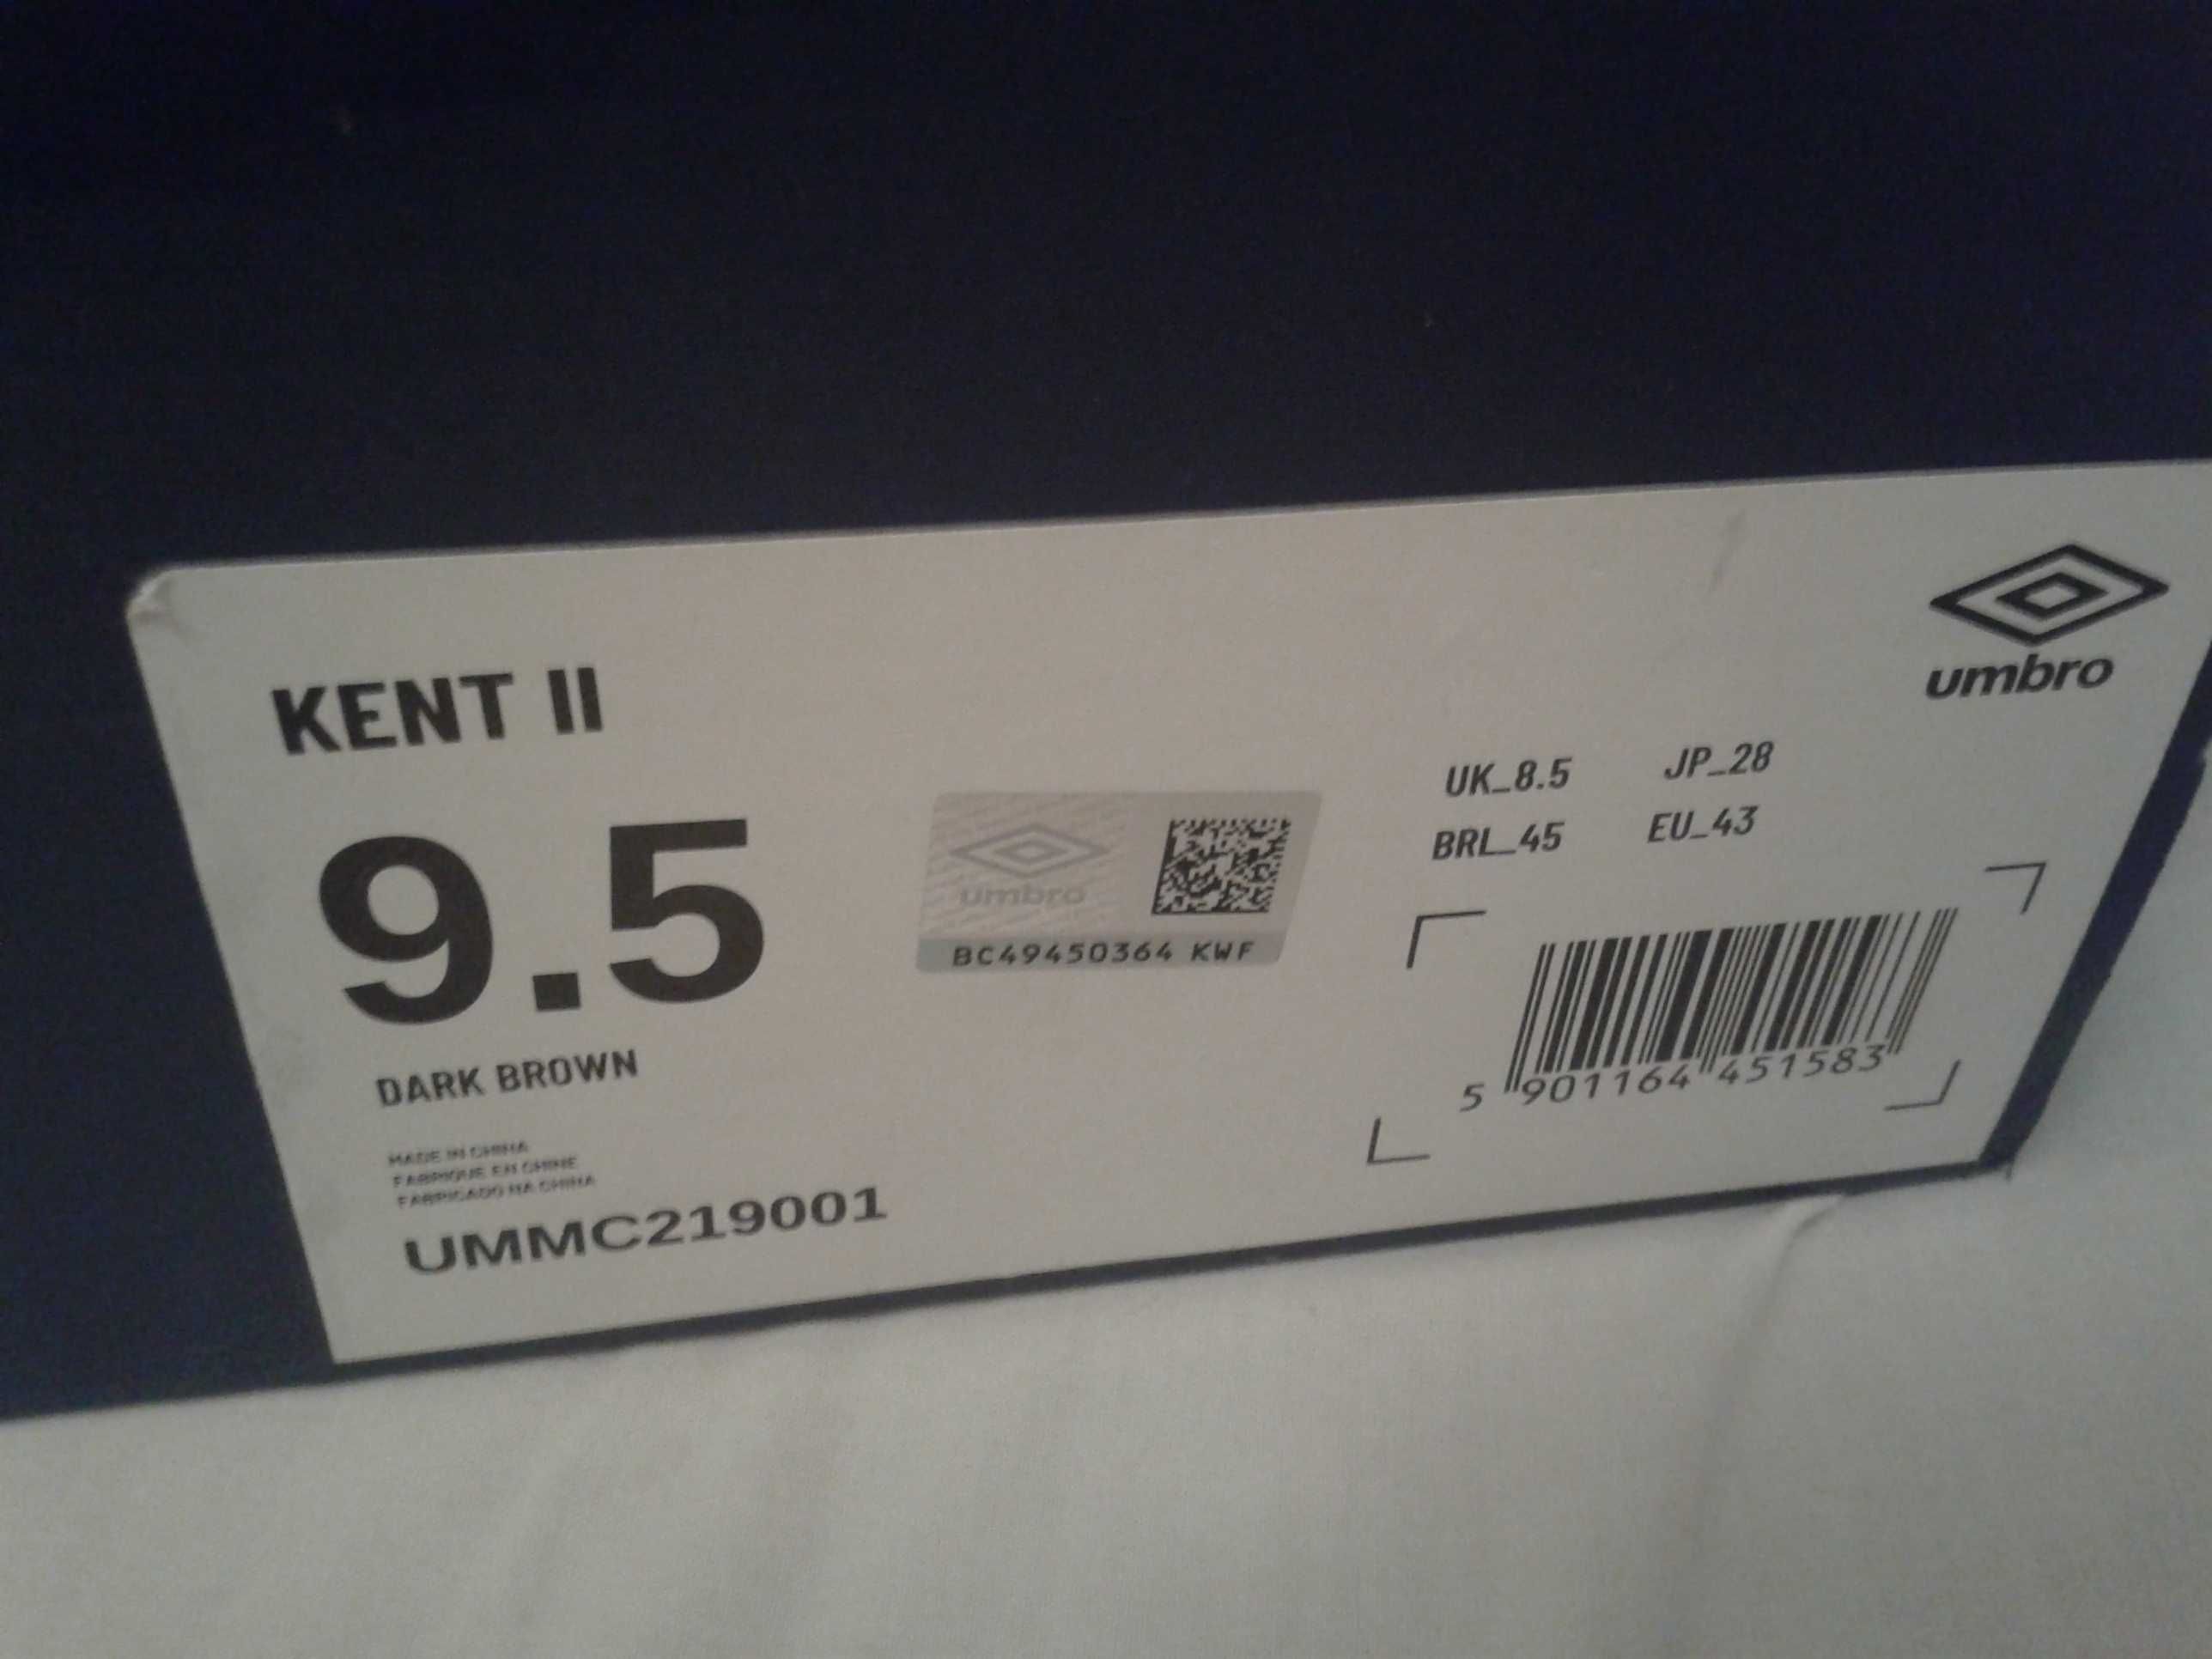 NOWE Buty bardzo ładne UMBRO Kent II rozmiar 41,5 wkładka 27 cm